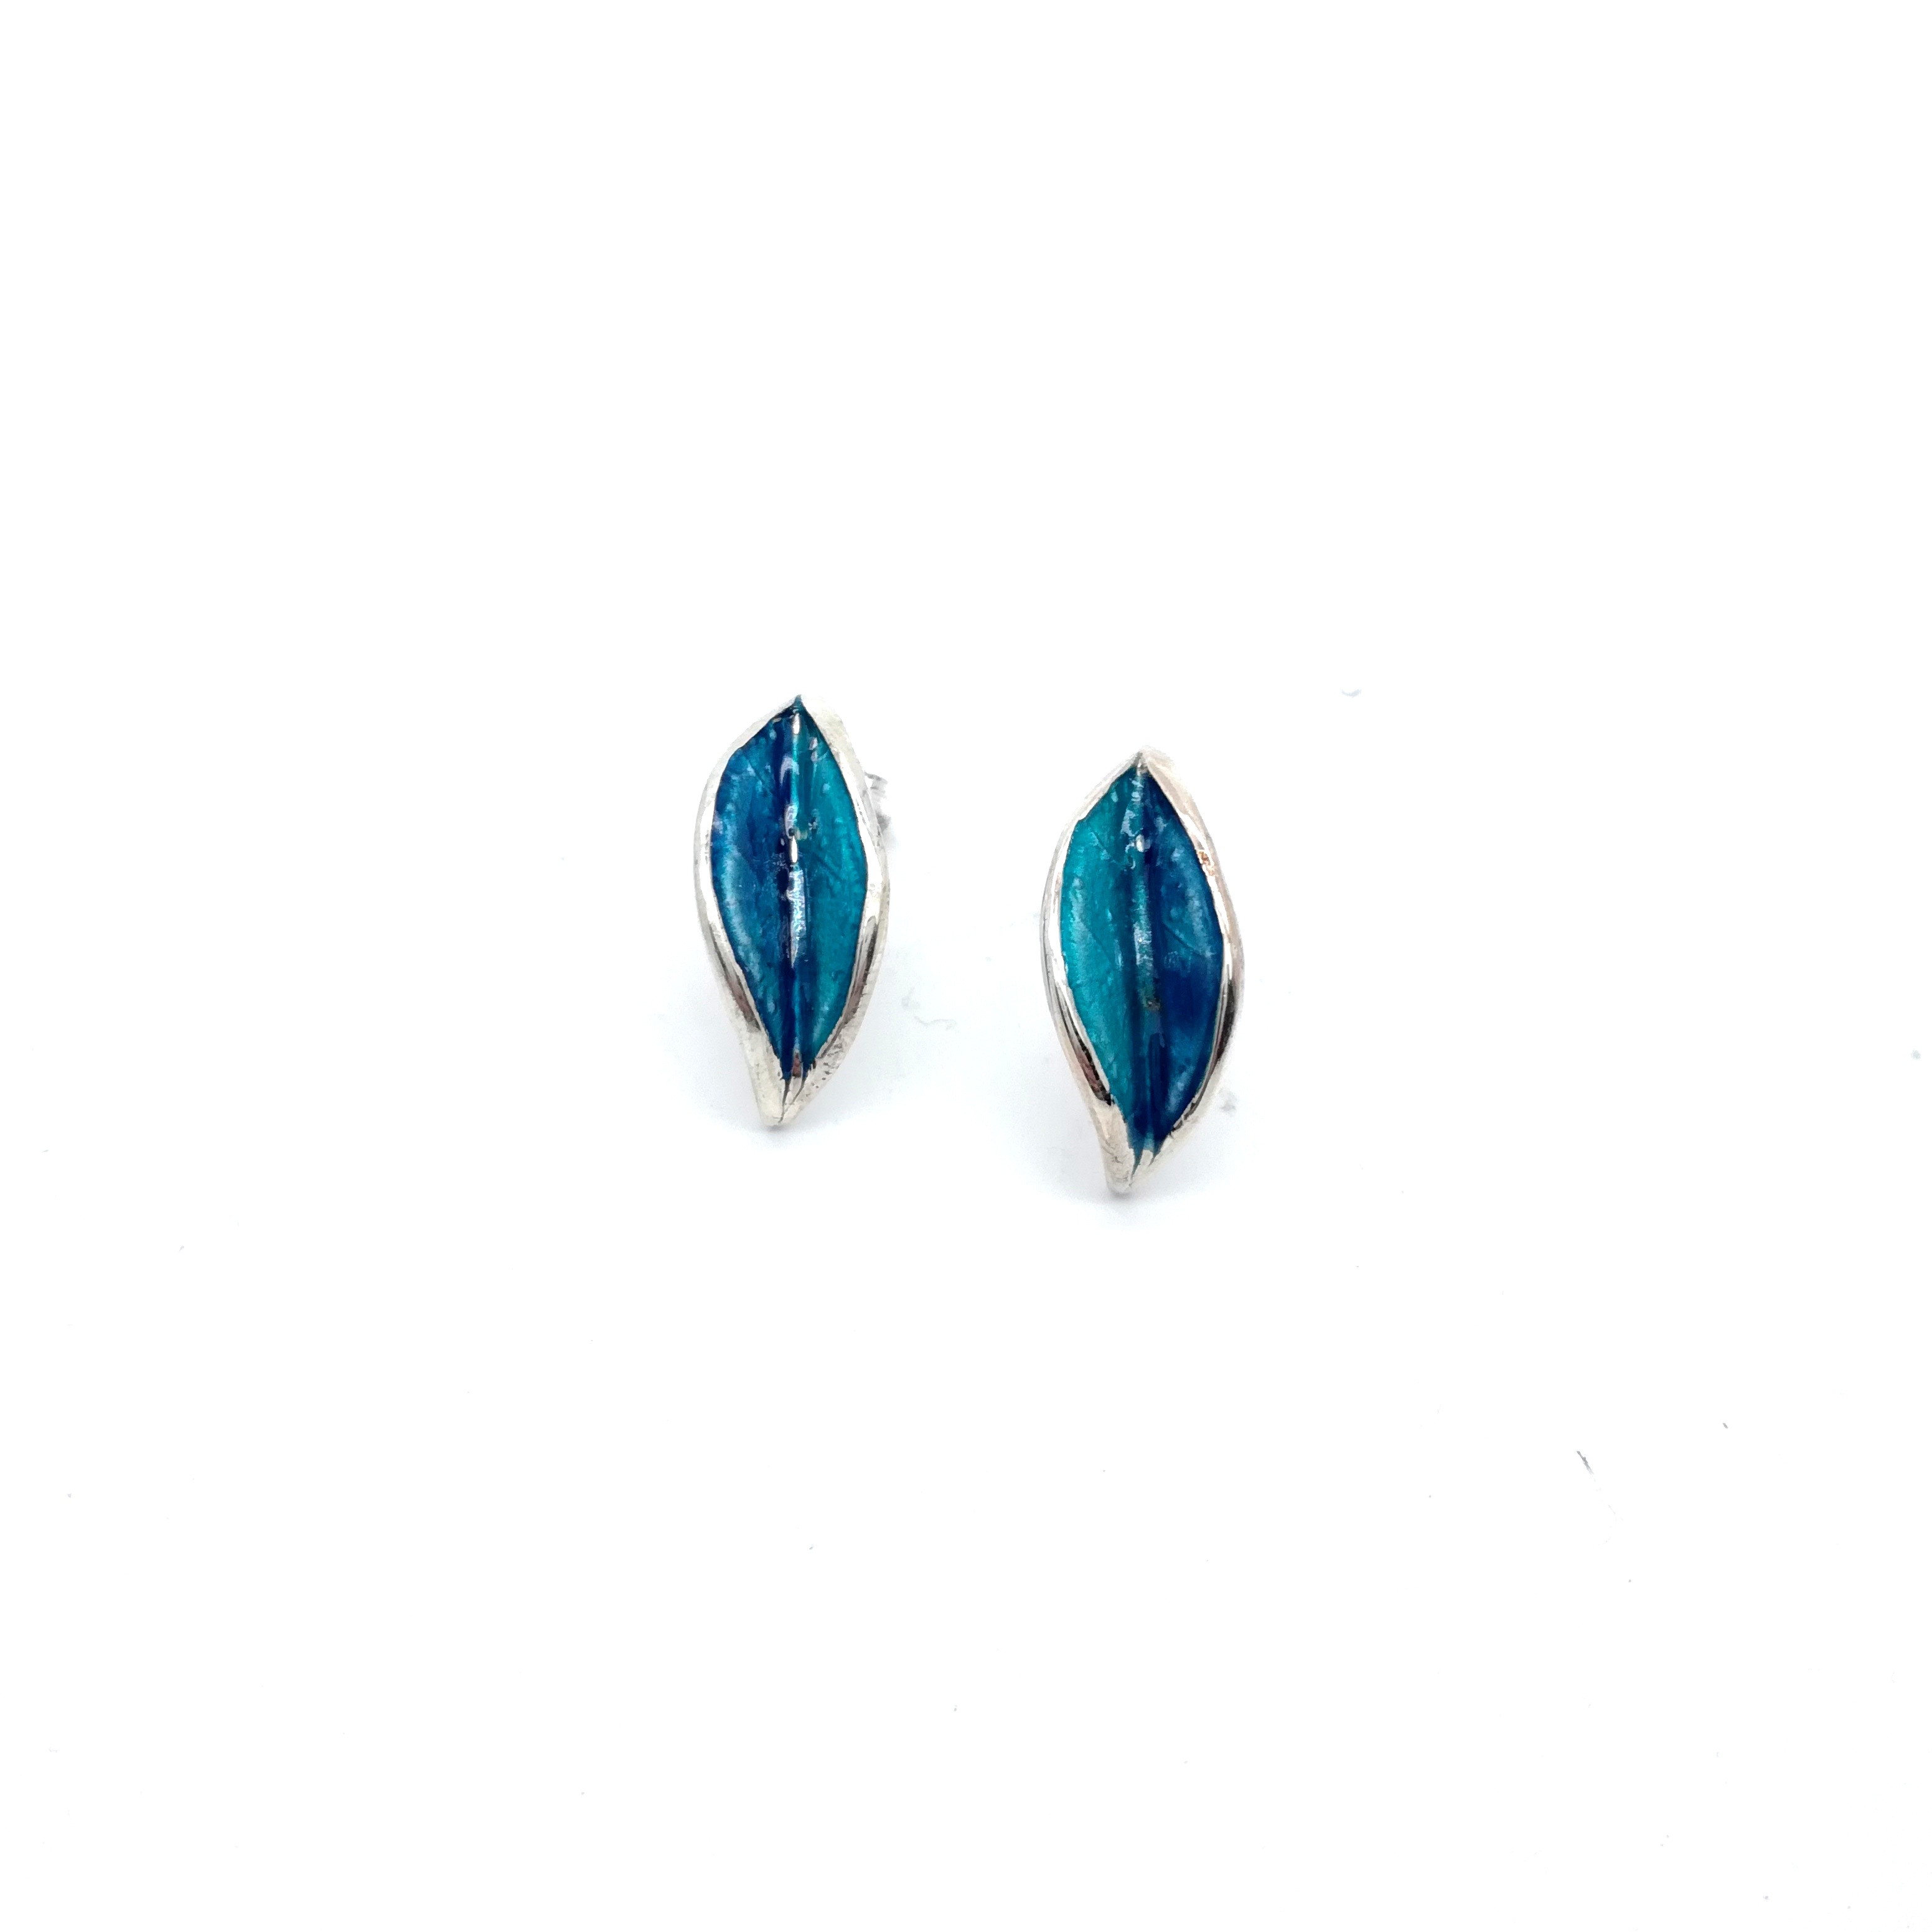 Silver earrings 925 with enamel